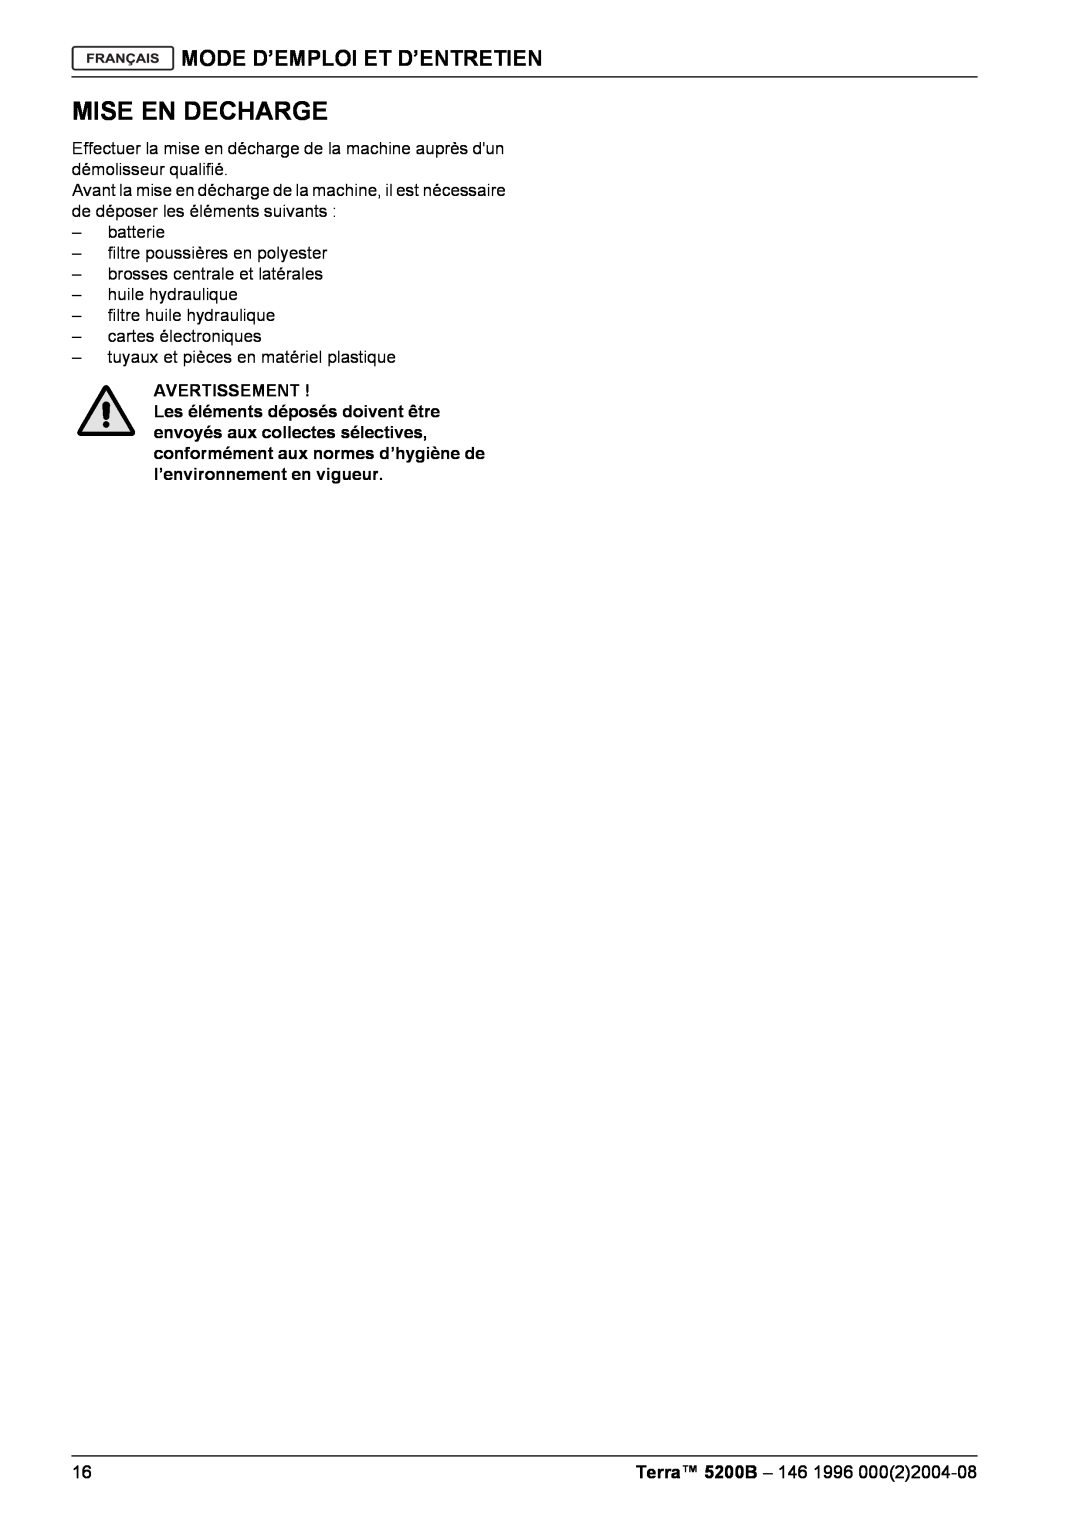 Nilfisk-Advance America 5200B manual Mise En Decharge, Mode D’Emploi Et D’Entretien, Avertissement 